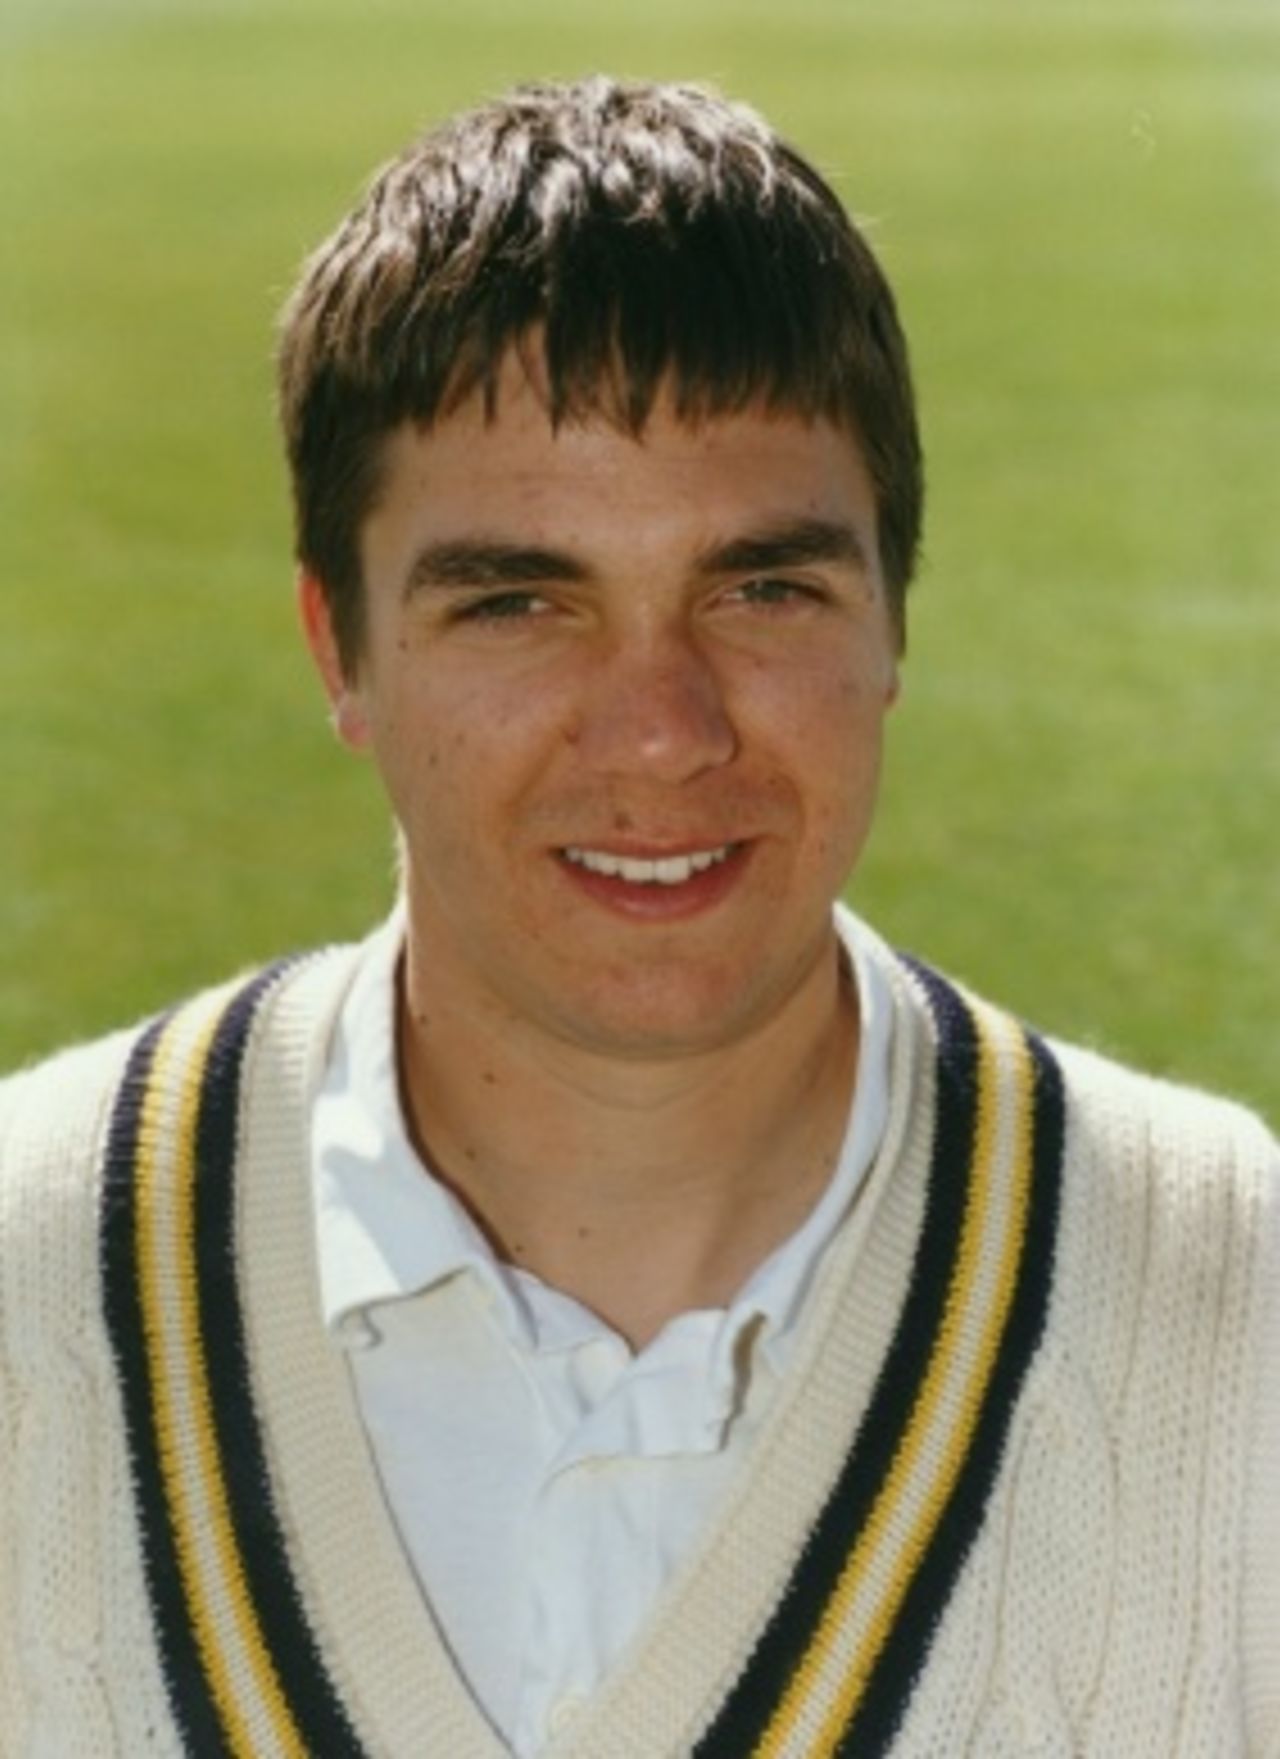 Martin Thursfield Hampshire bowler, 1992-1996